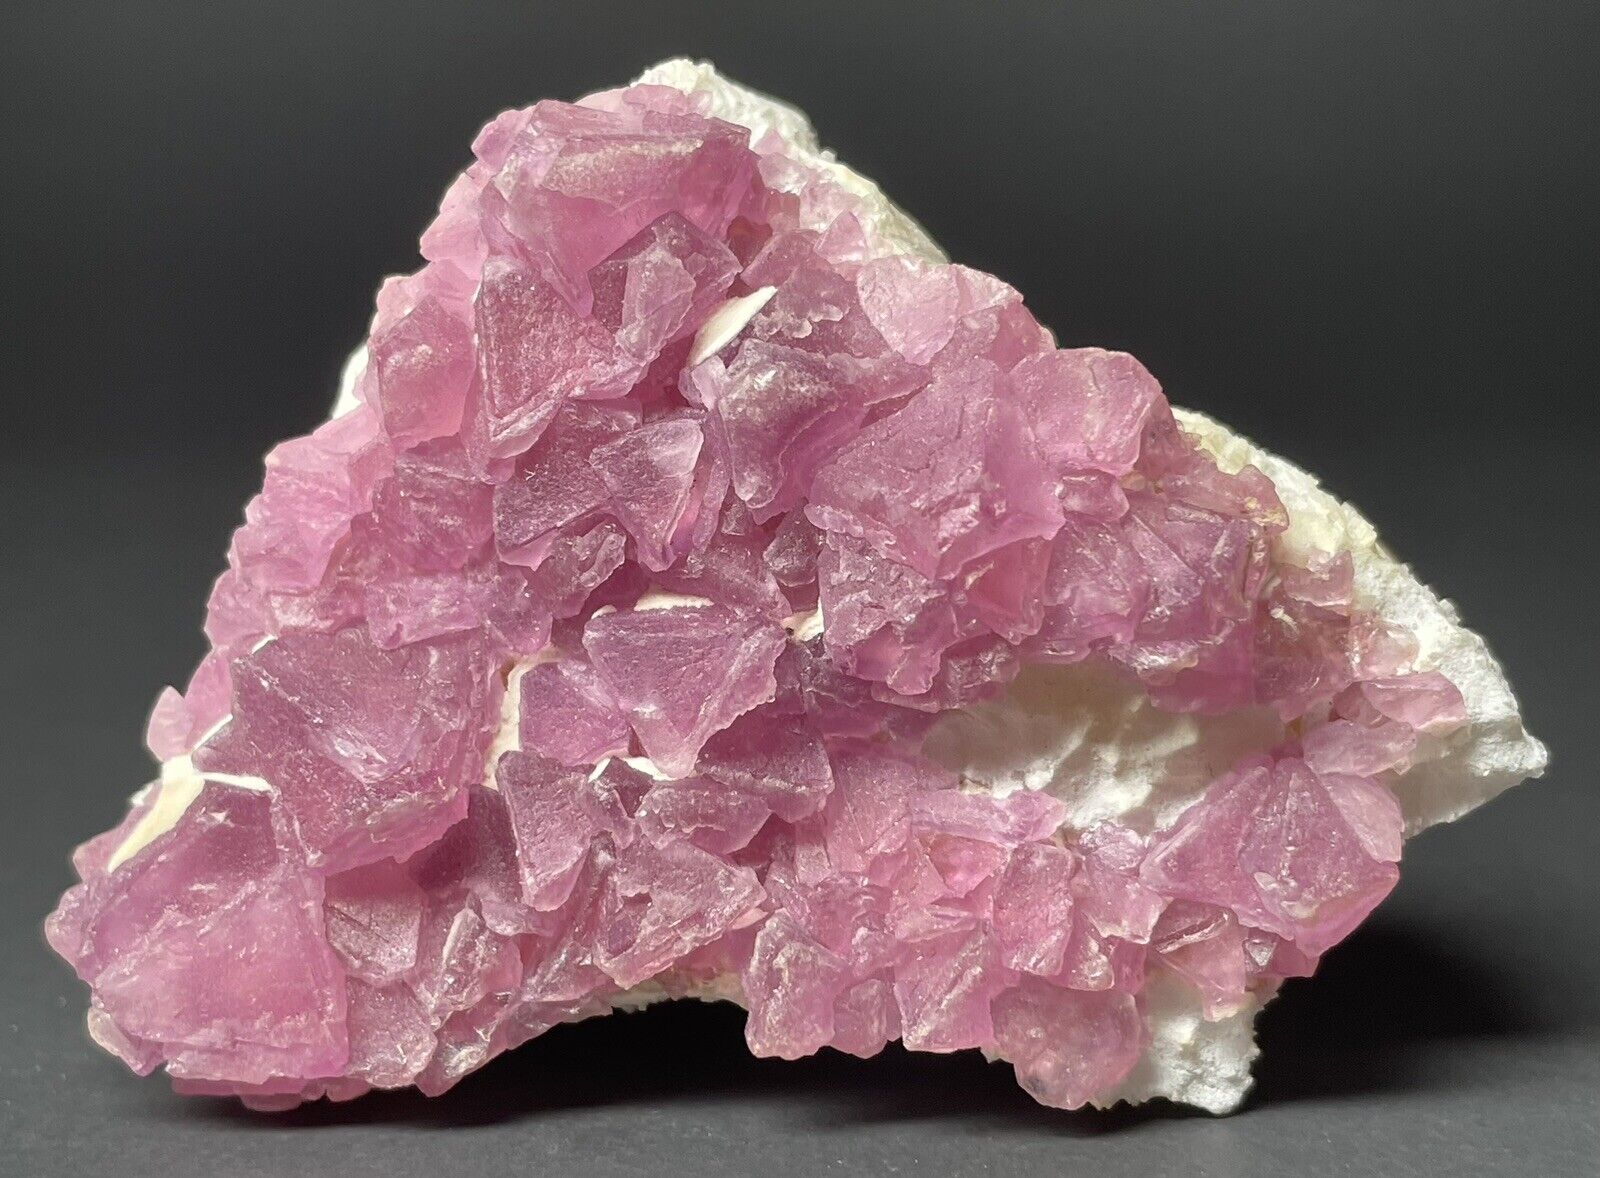 Pink Octahedral Fluorite - 7.2 cm - Navidad Mine, Durango, Mexico